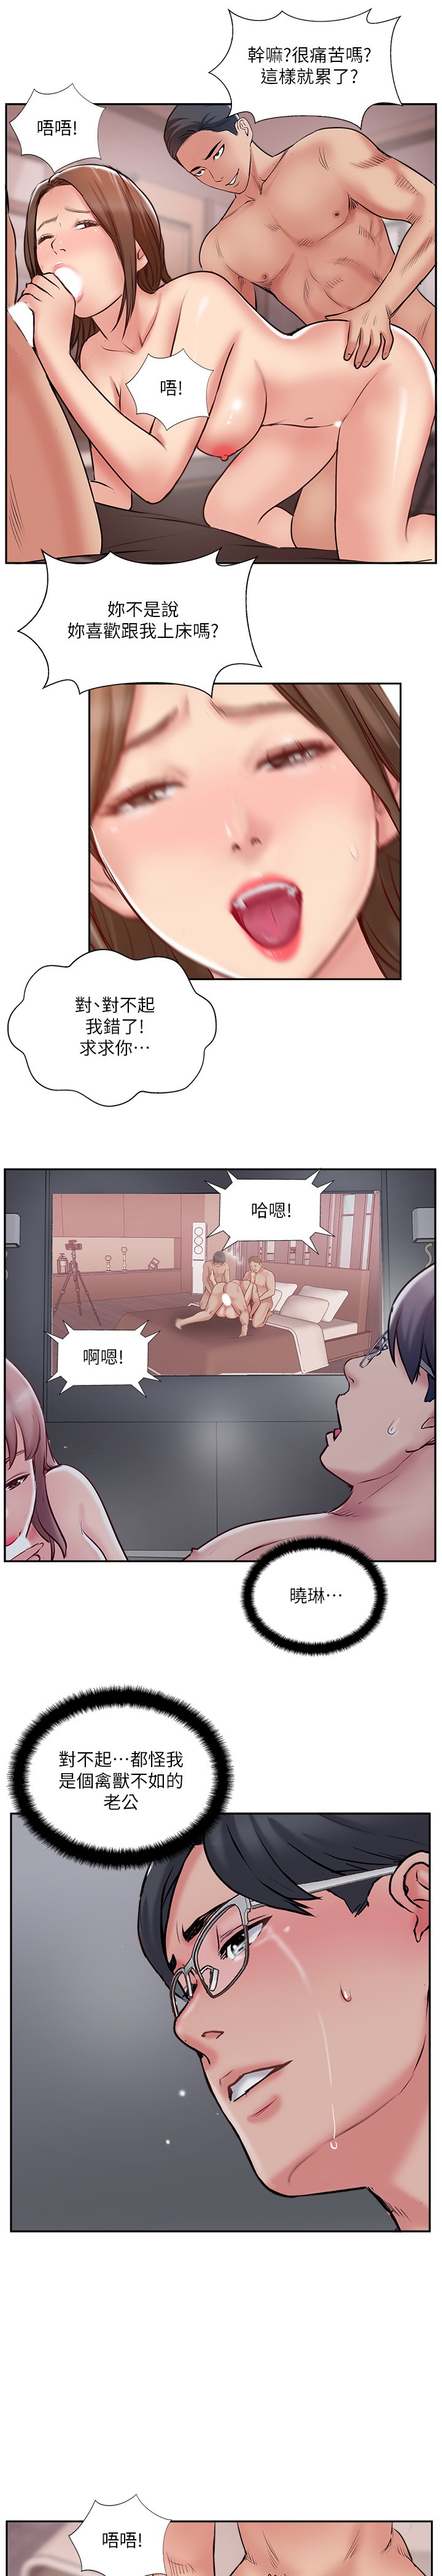 韩国污漫画 完美新伴侶 第50话 21